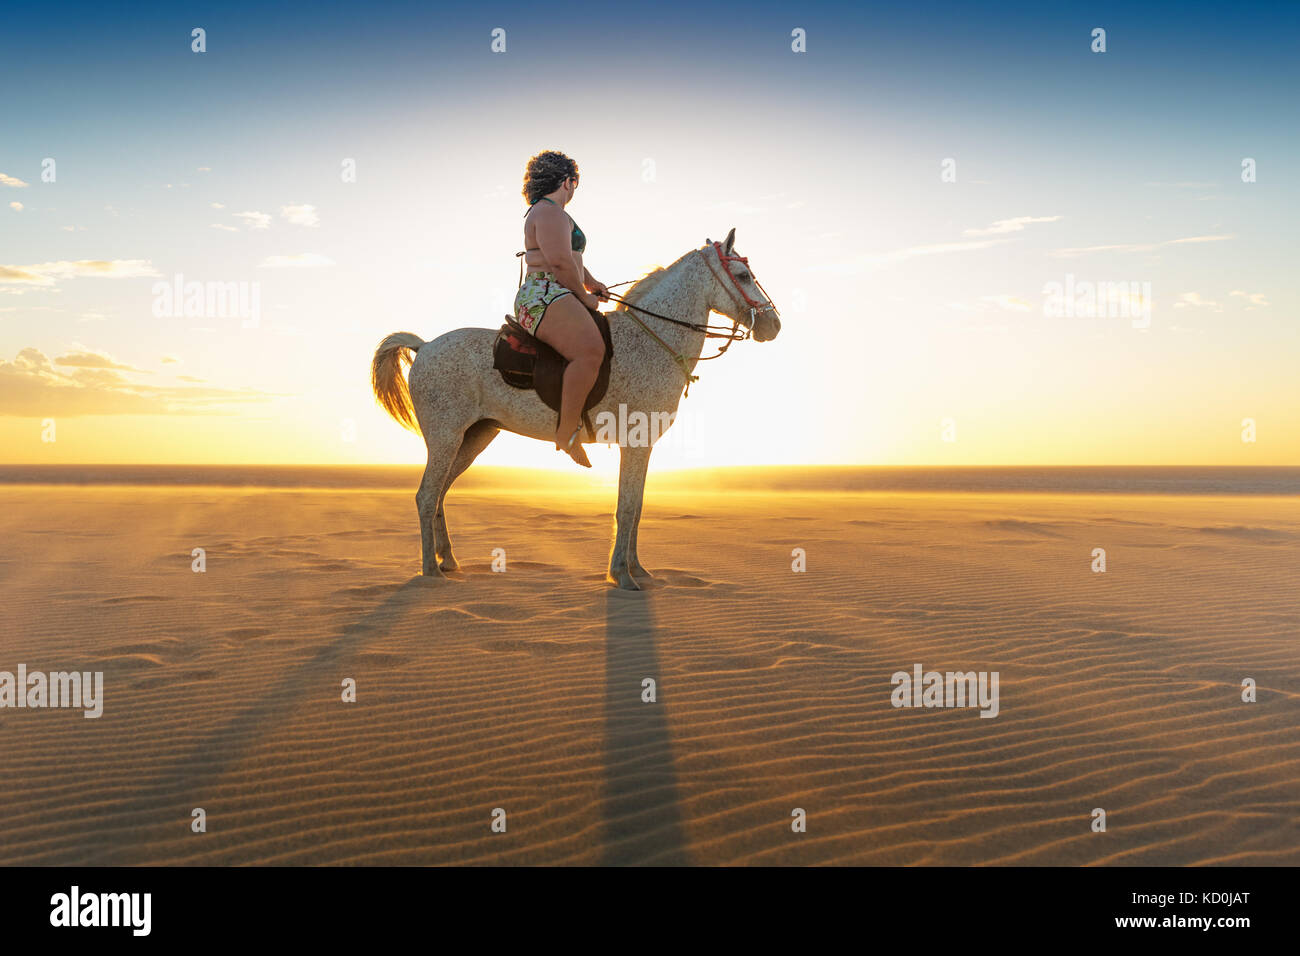 Woman riding horse on beach, side view, Jericoacoara, Ceara, Brésil, Amérique du Sud Banque D'Images